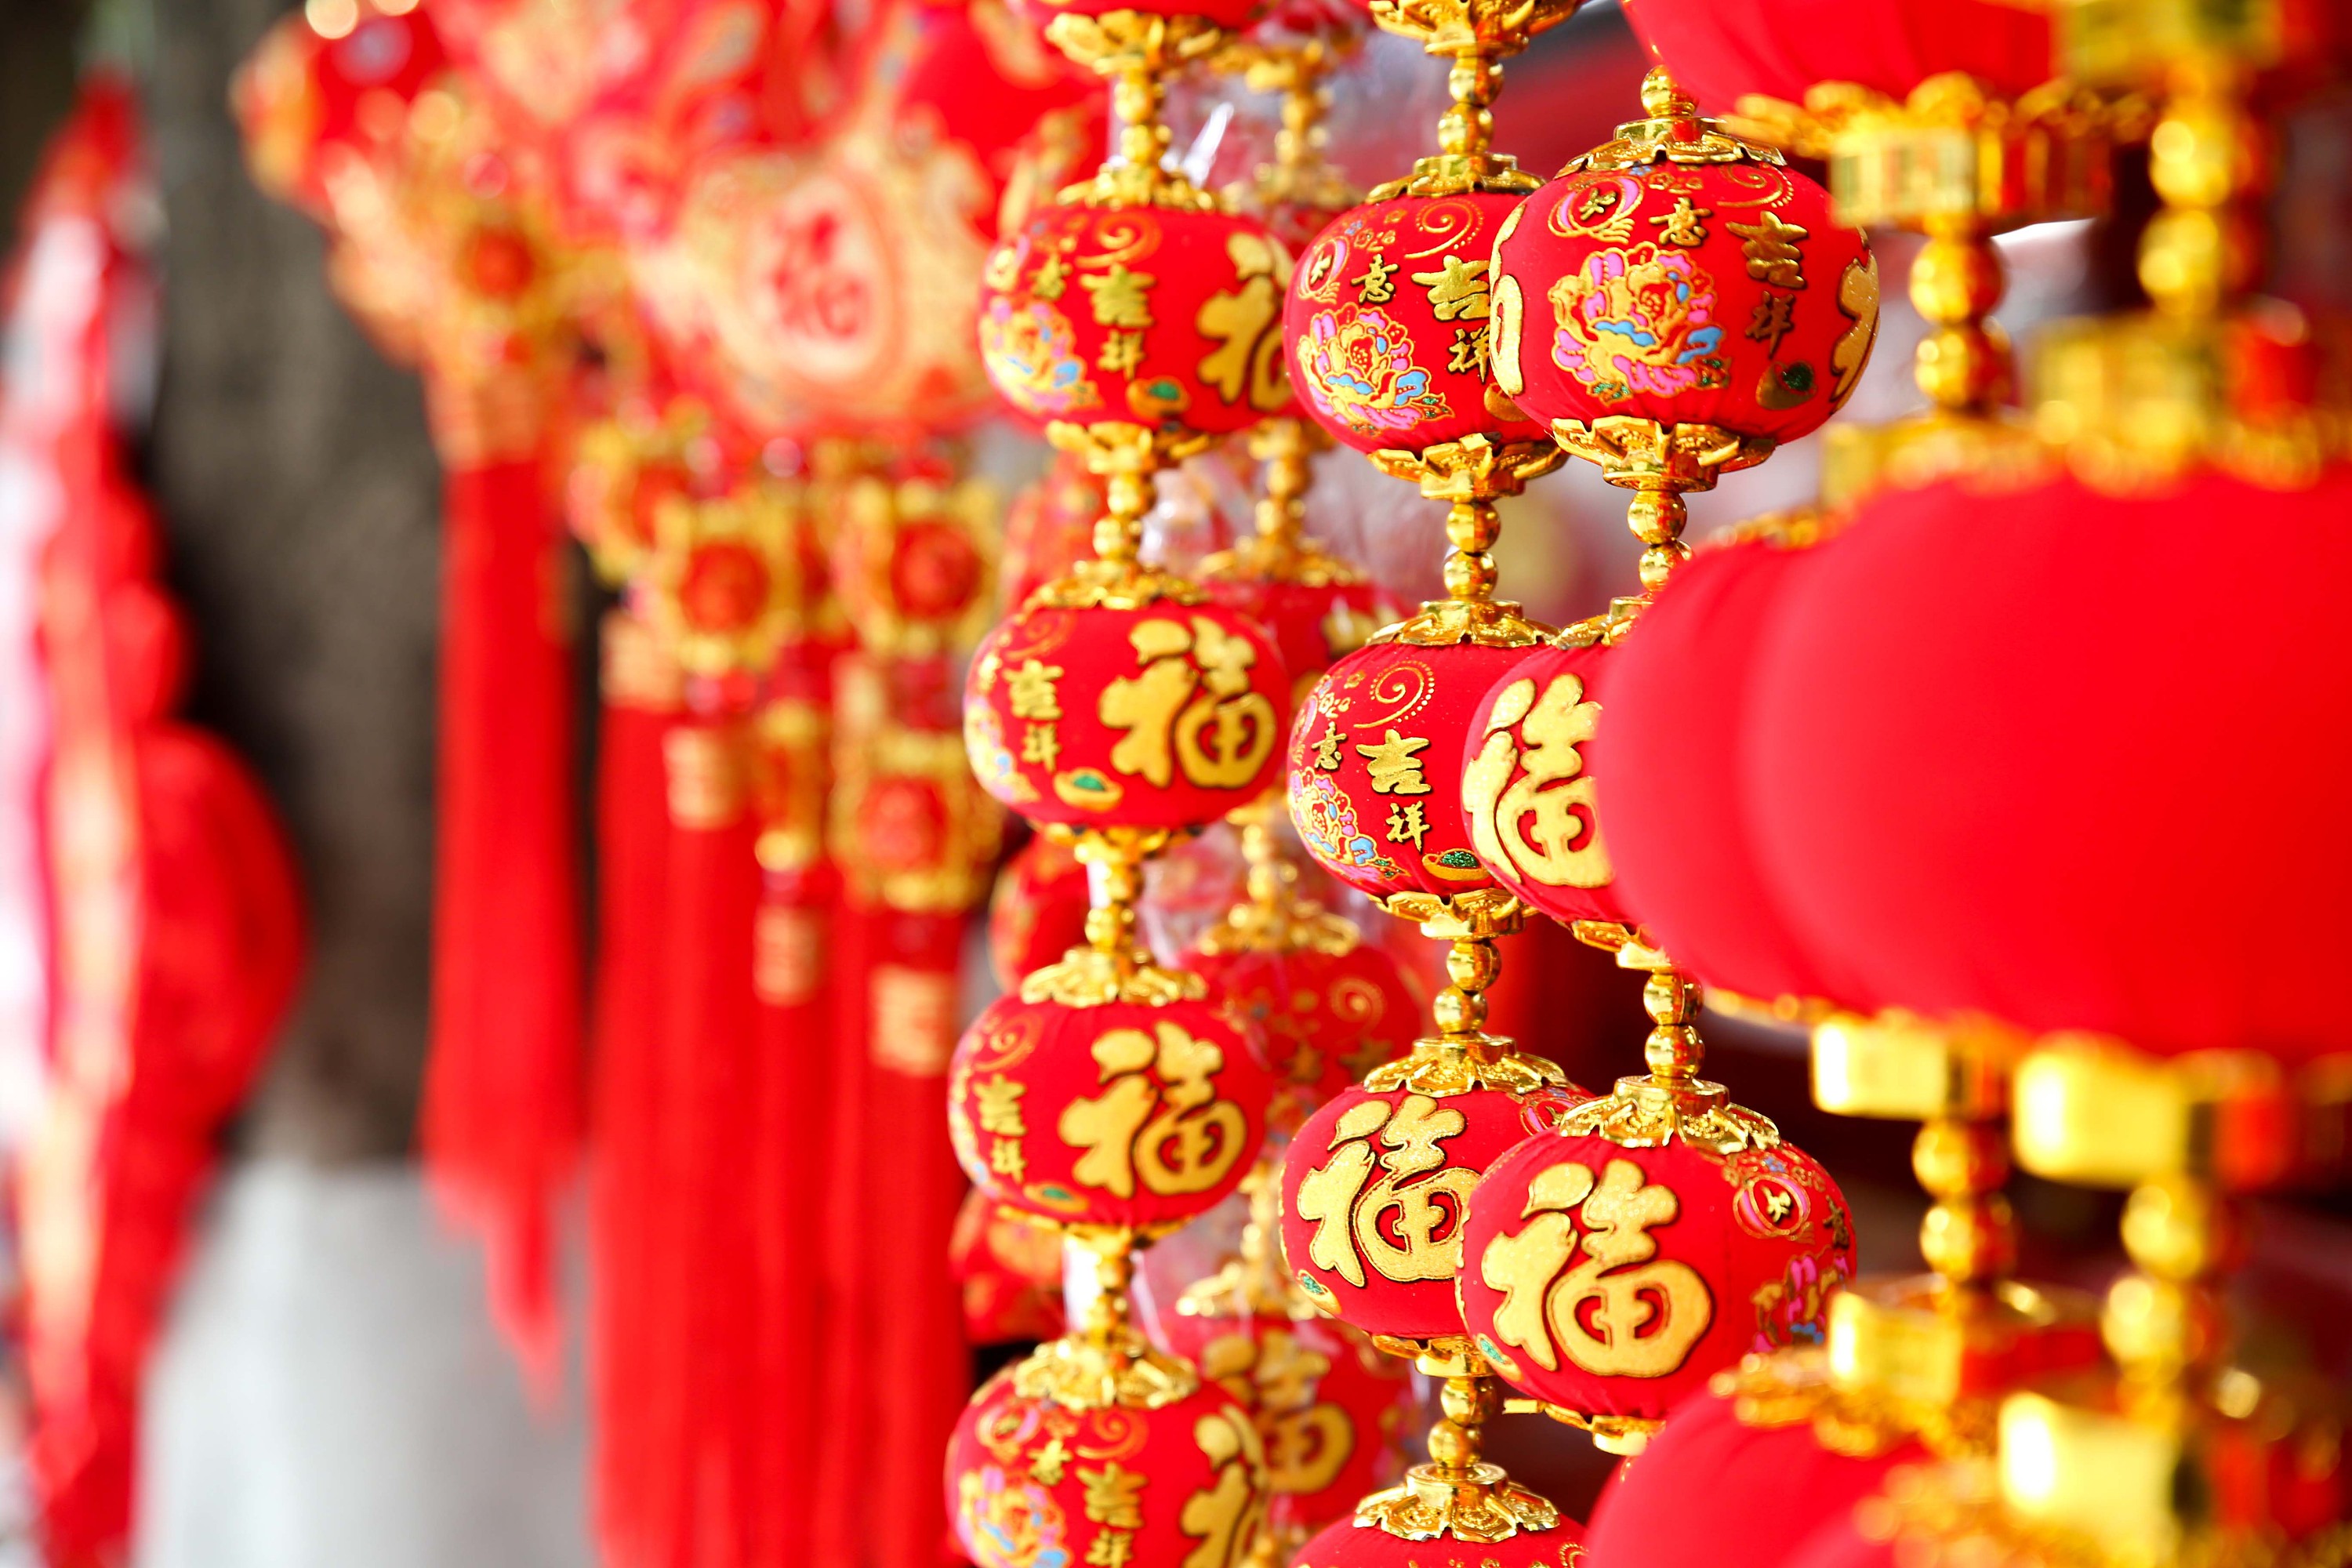 “广州过年·花城看花” 2021广州春节文化旅游系列推介活动在京举行